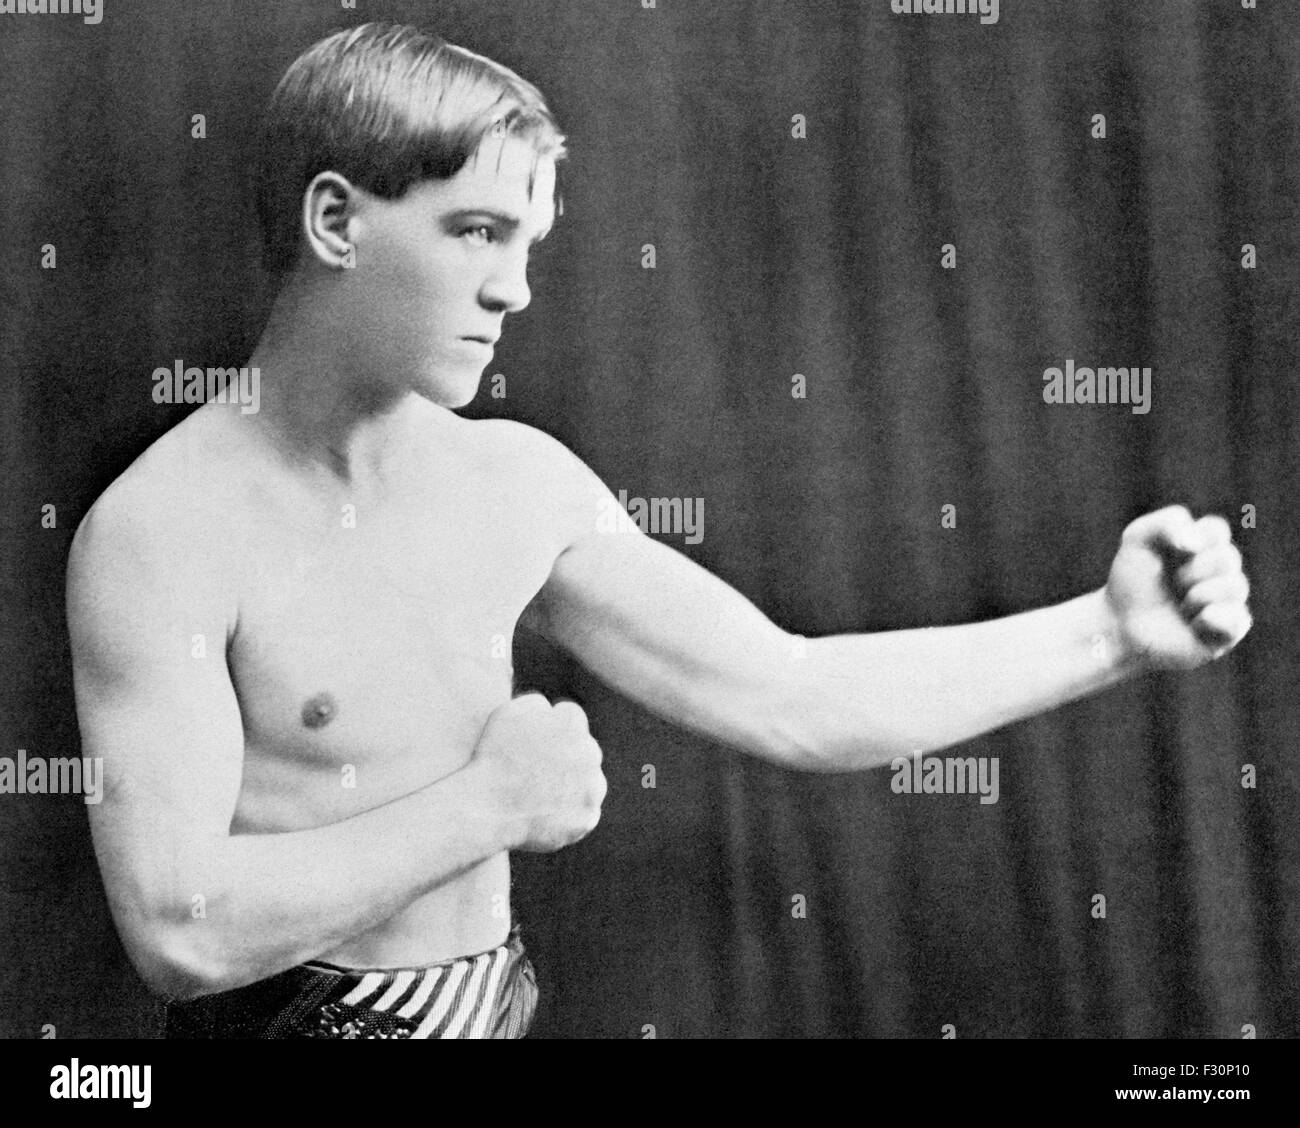 Vintage Foto von US-amerikanischer Boxer "Schrecklichen" Terry McGovern (1880-1918) - Gewinner der WM-Titel im Bantamgewicht sowohl im Federgewicht. McGovern, in Johnstown, Pennsylvania geboren, gilt als eines der größten Leichtgewichte und härtesten Puncher aller Zeiten. Stockfoto